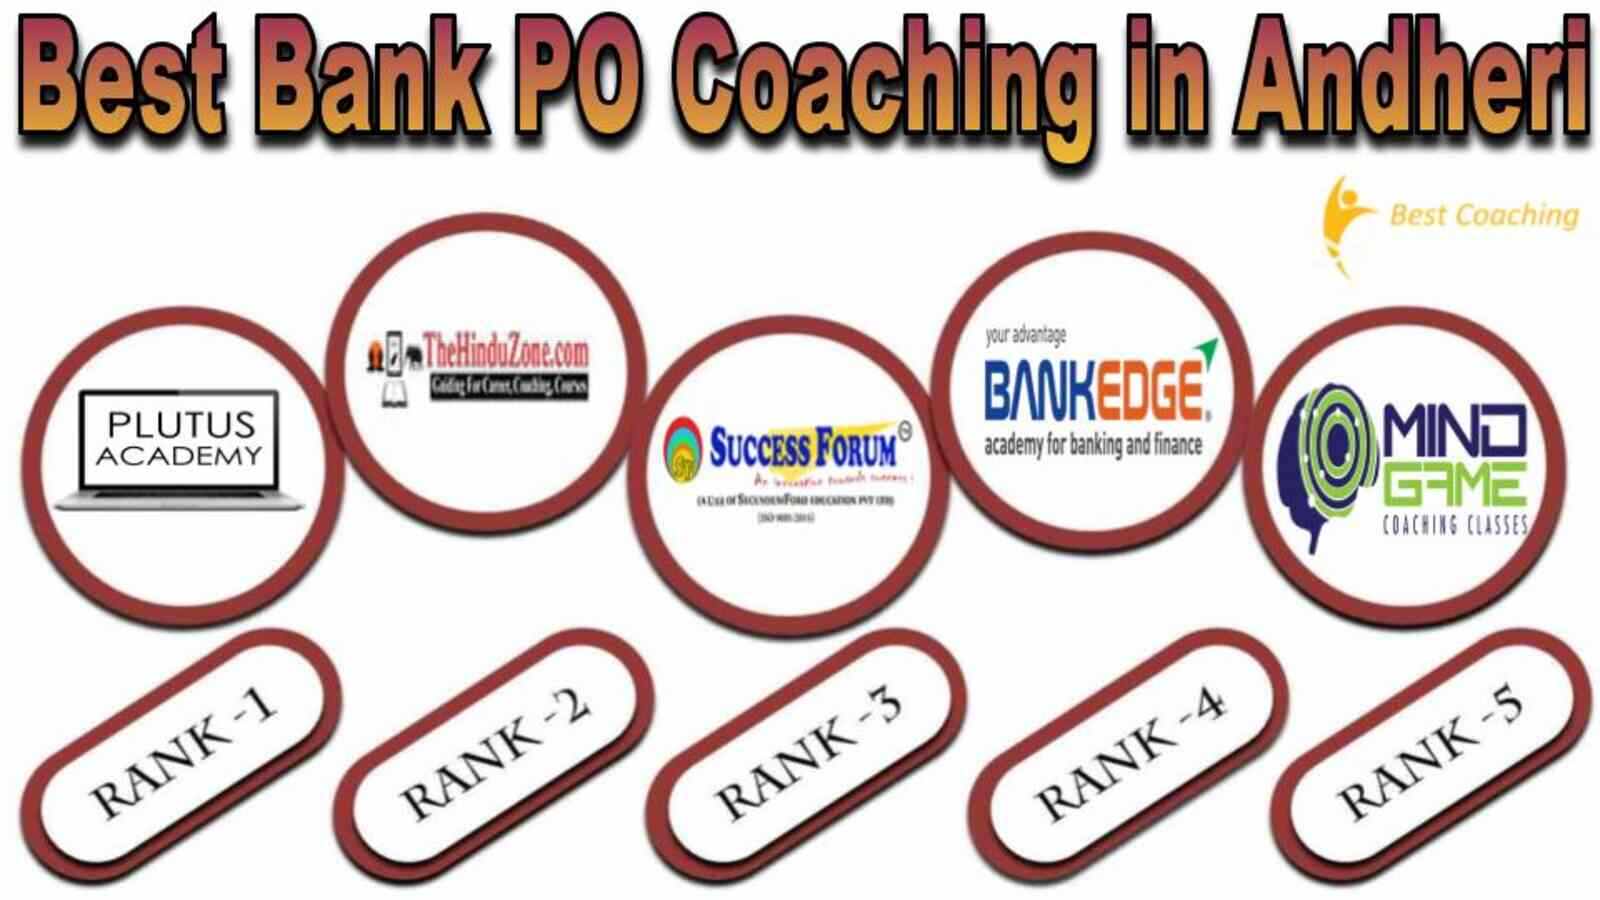 Top Bank PO Coaching in Andheri